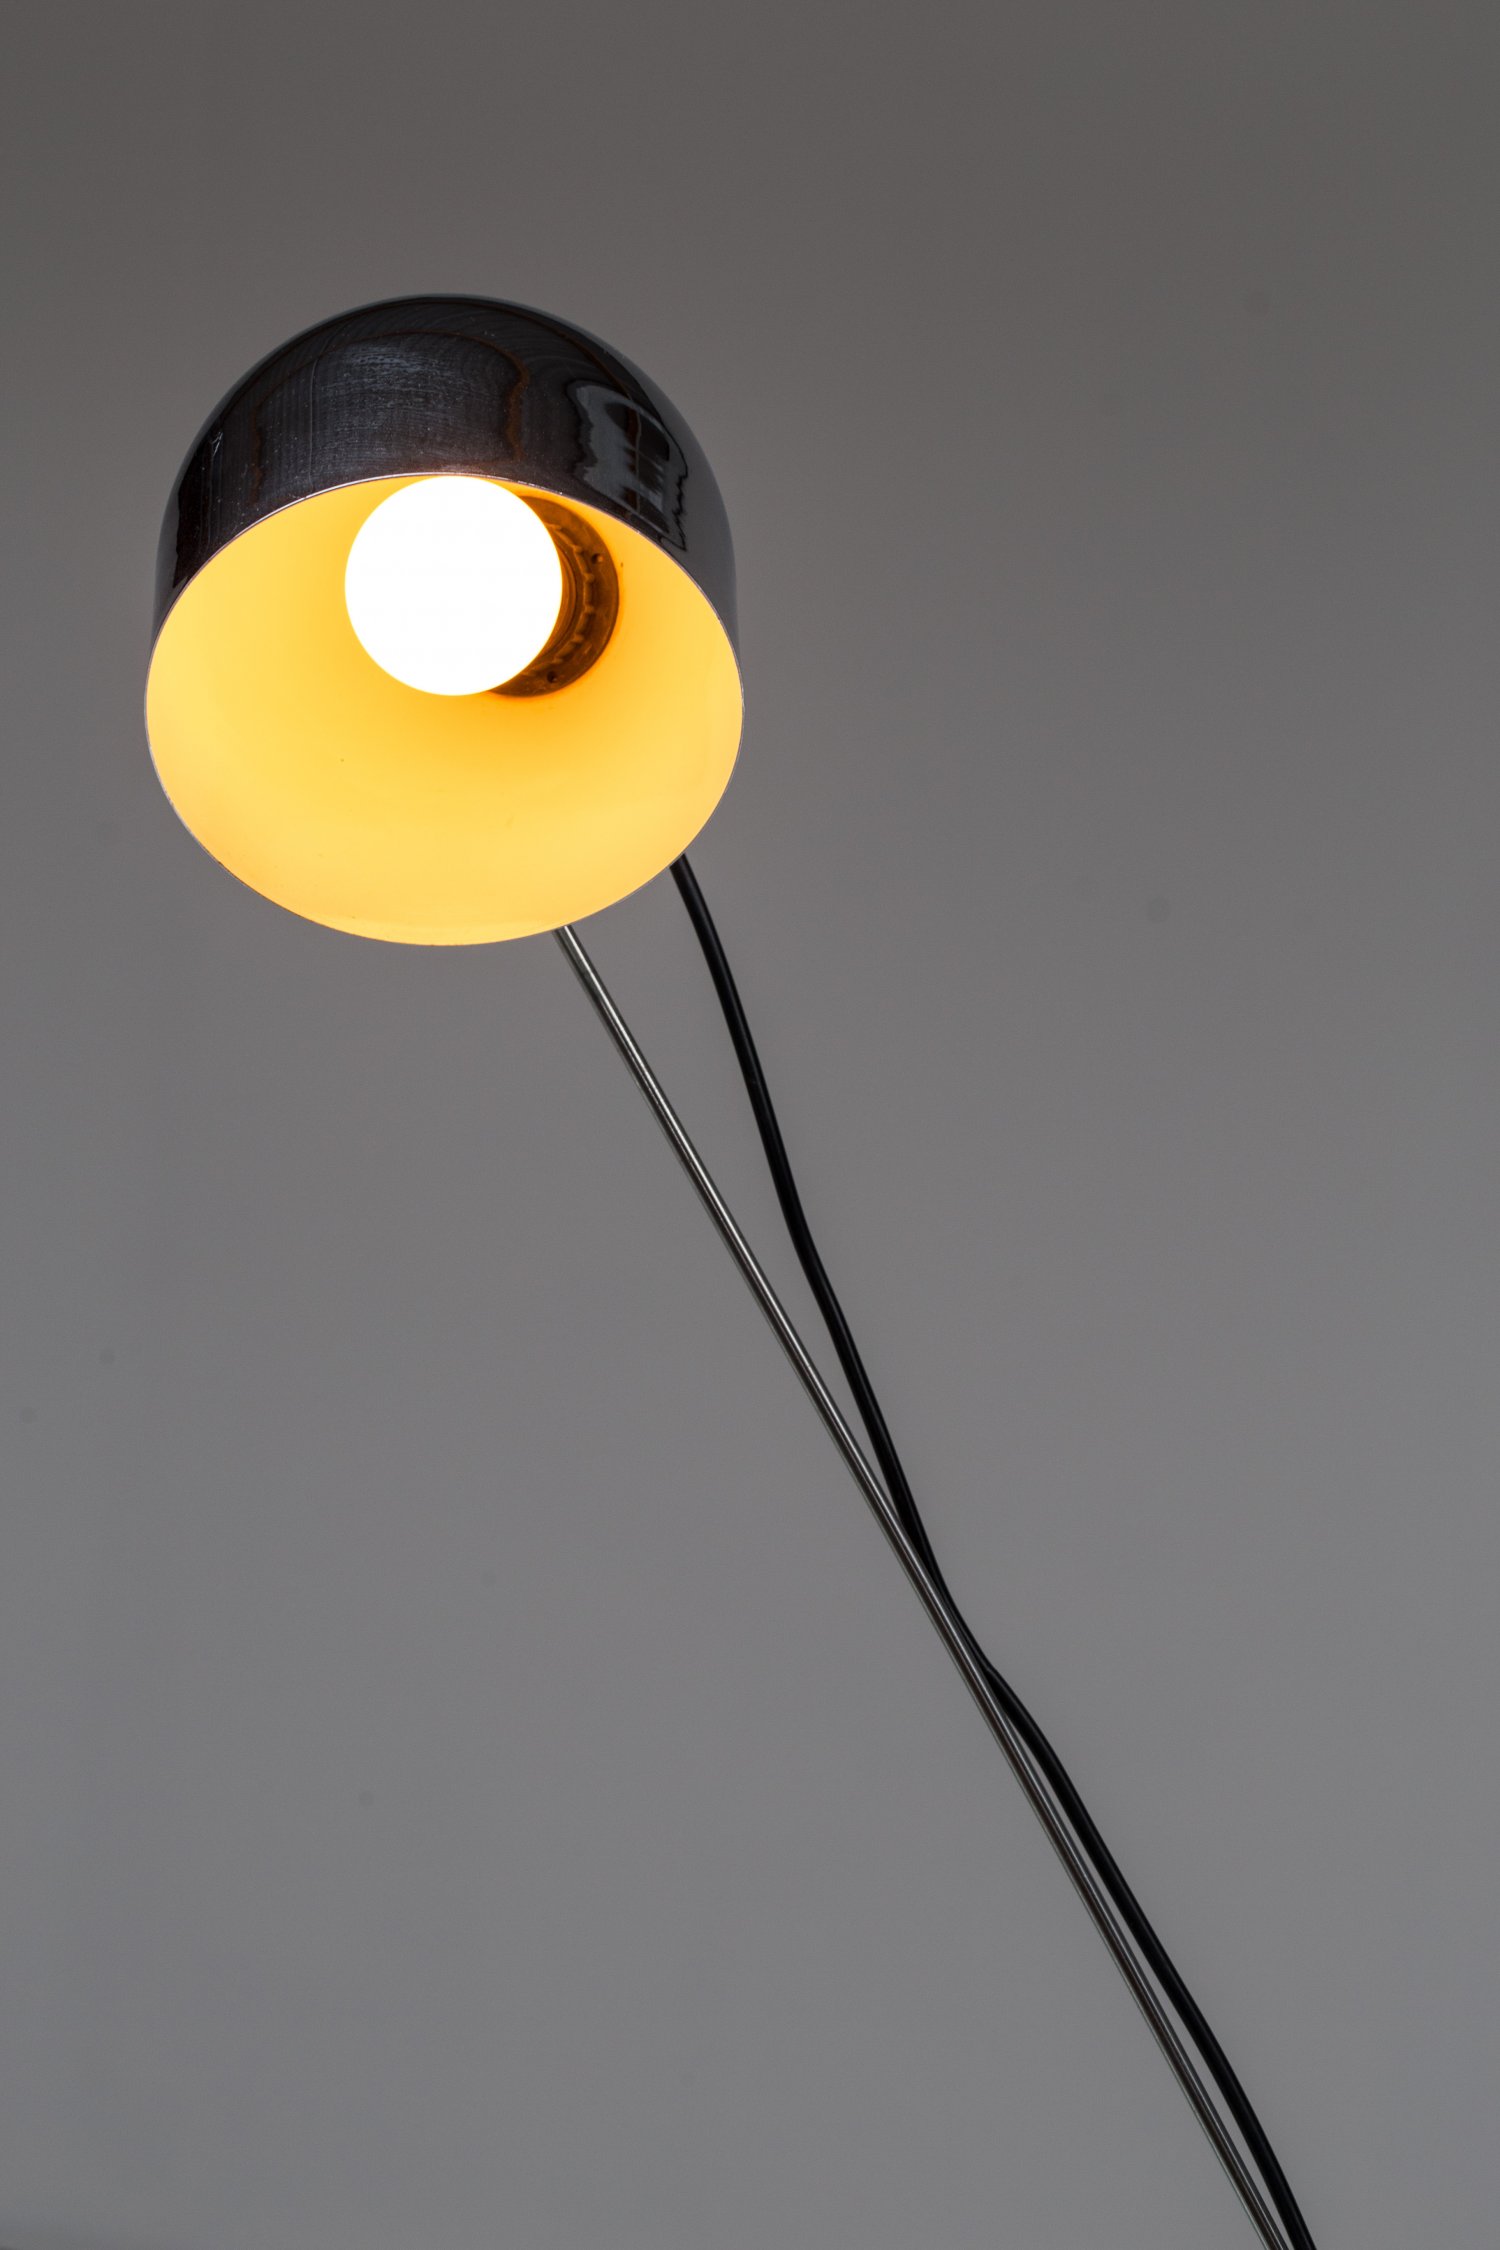 Desk lamp by Lumenform